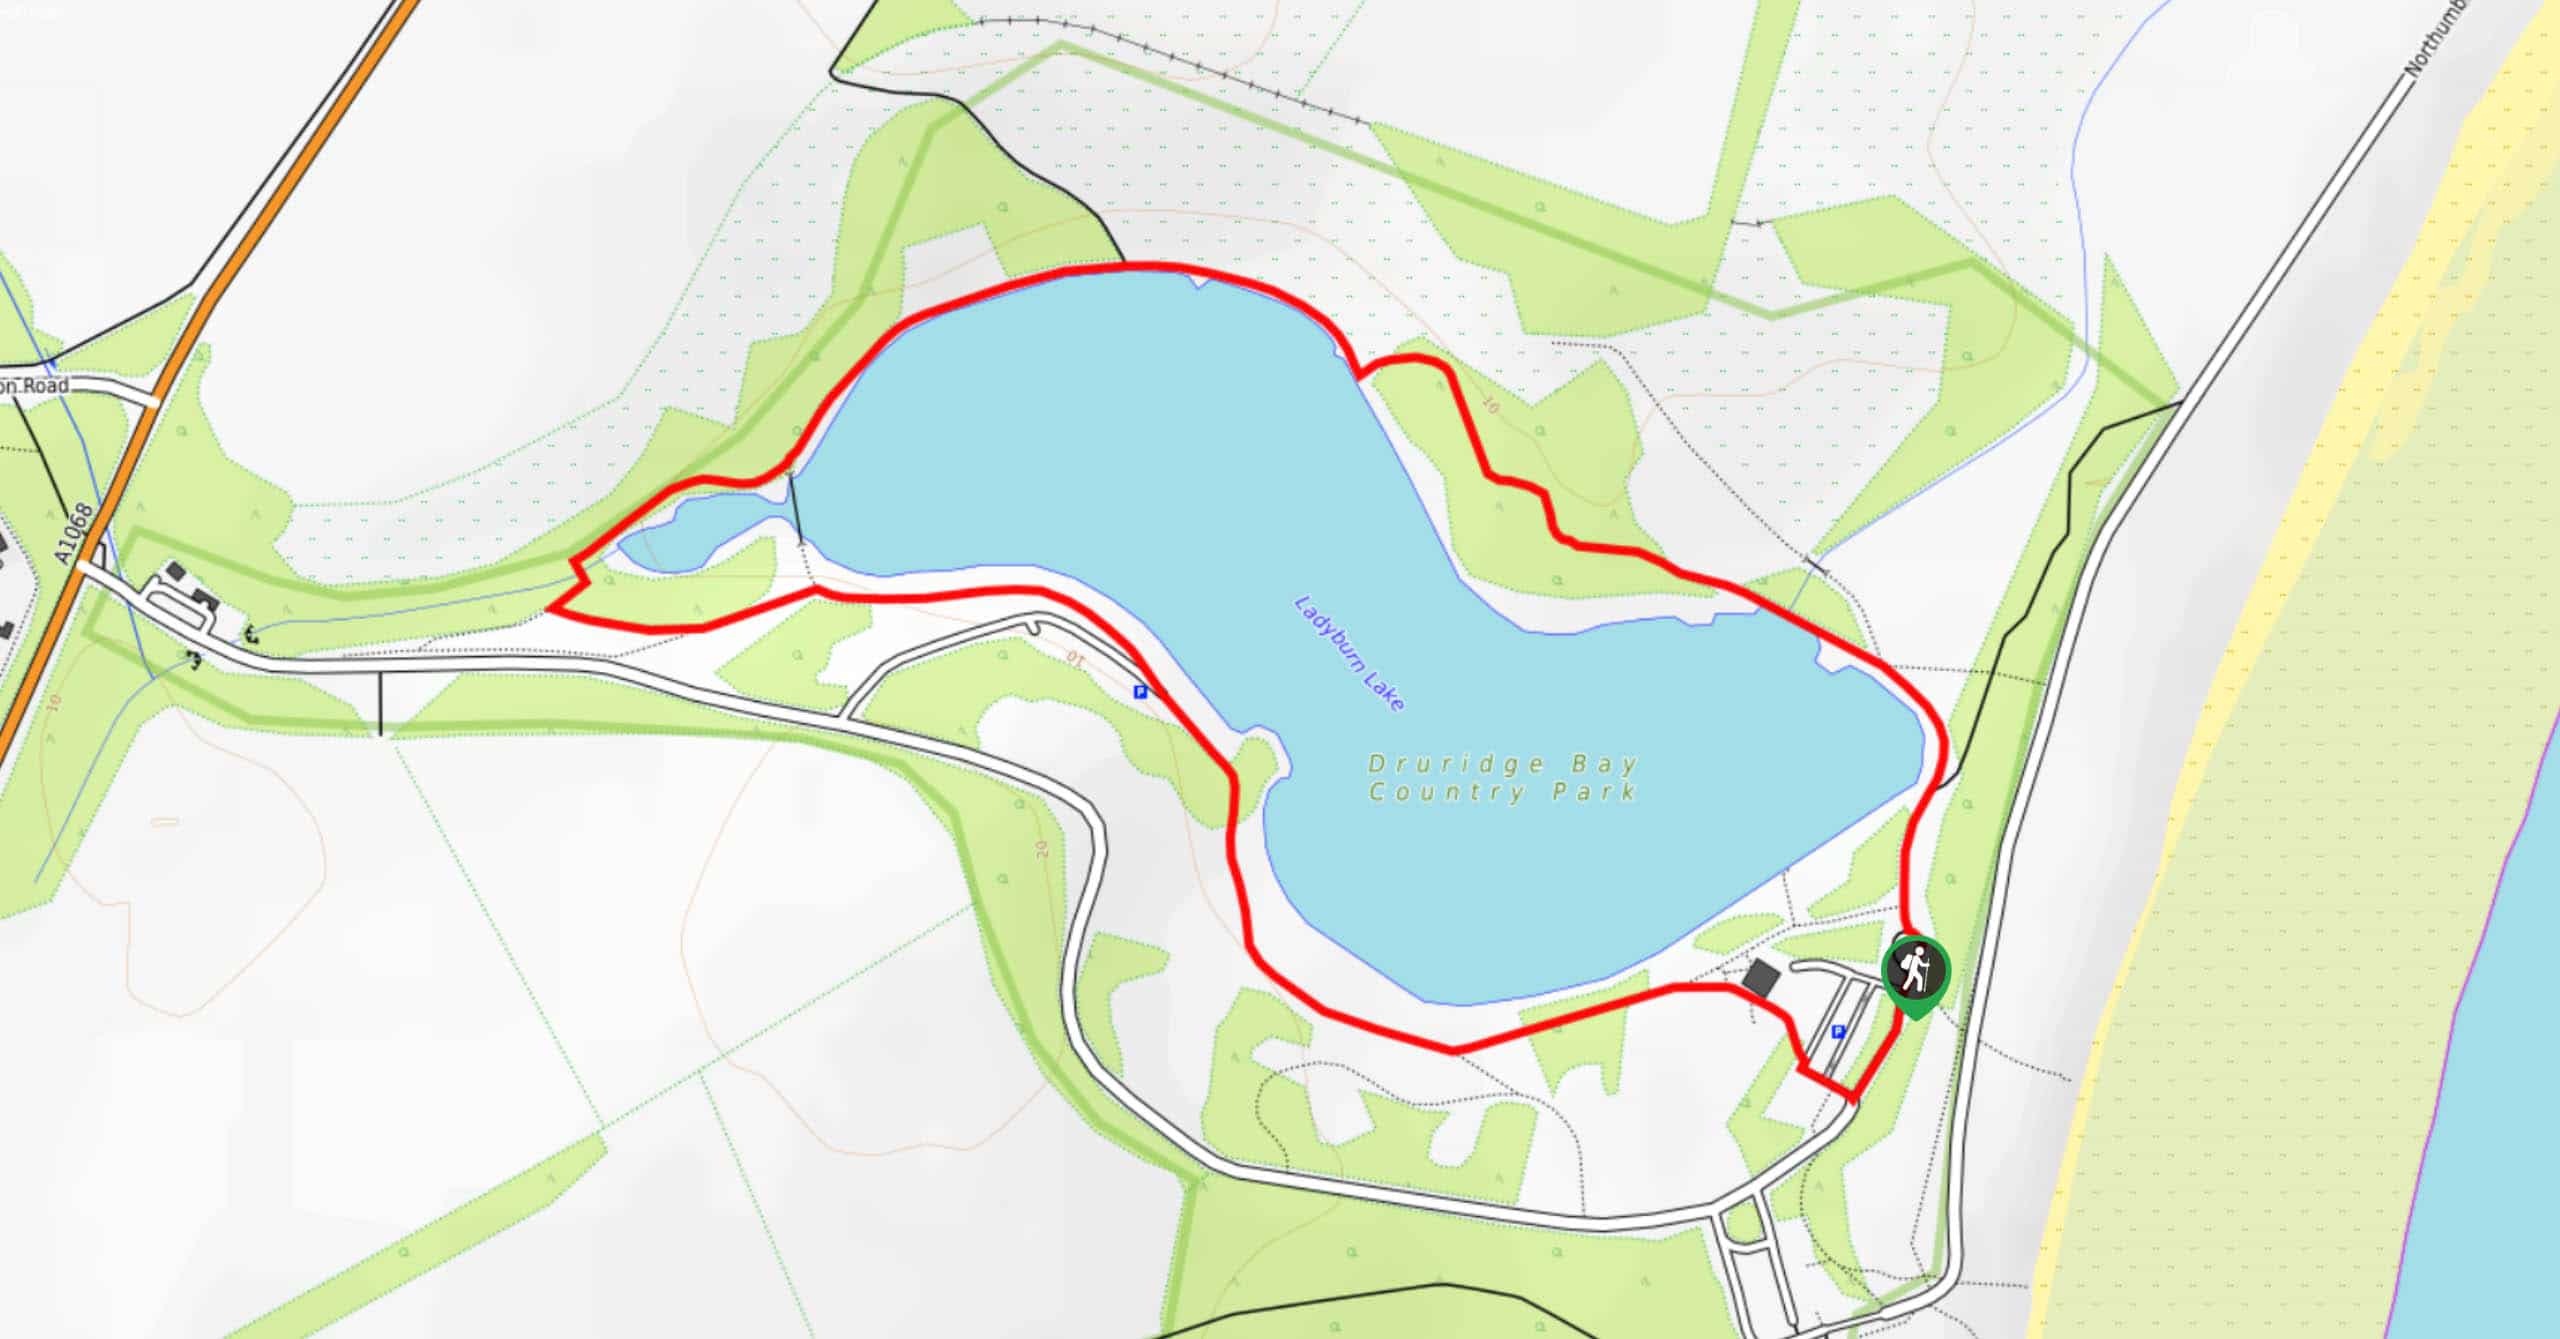 Ladyburn Lake Circular Walk Map